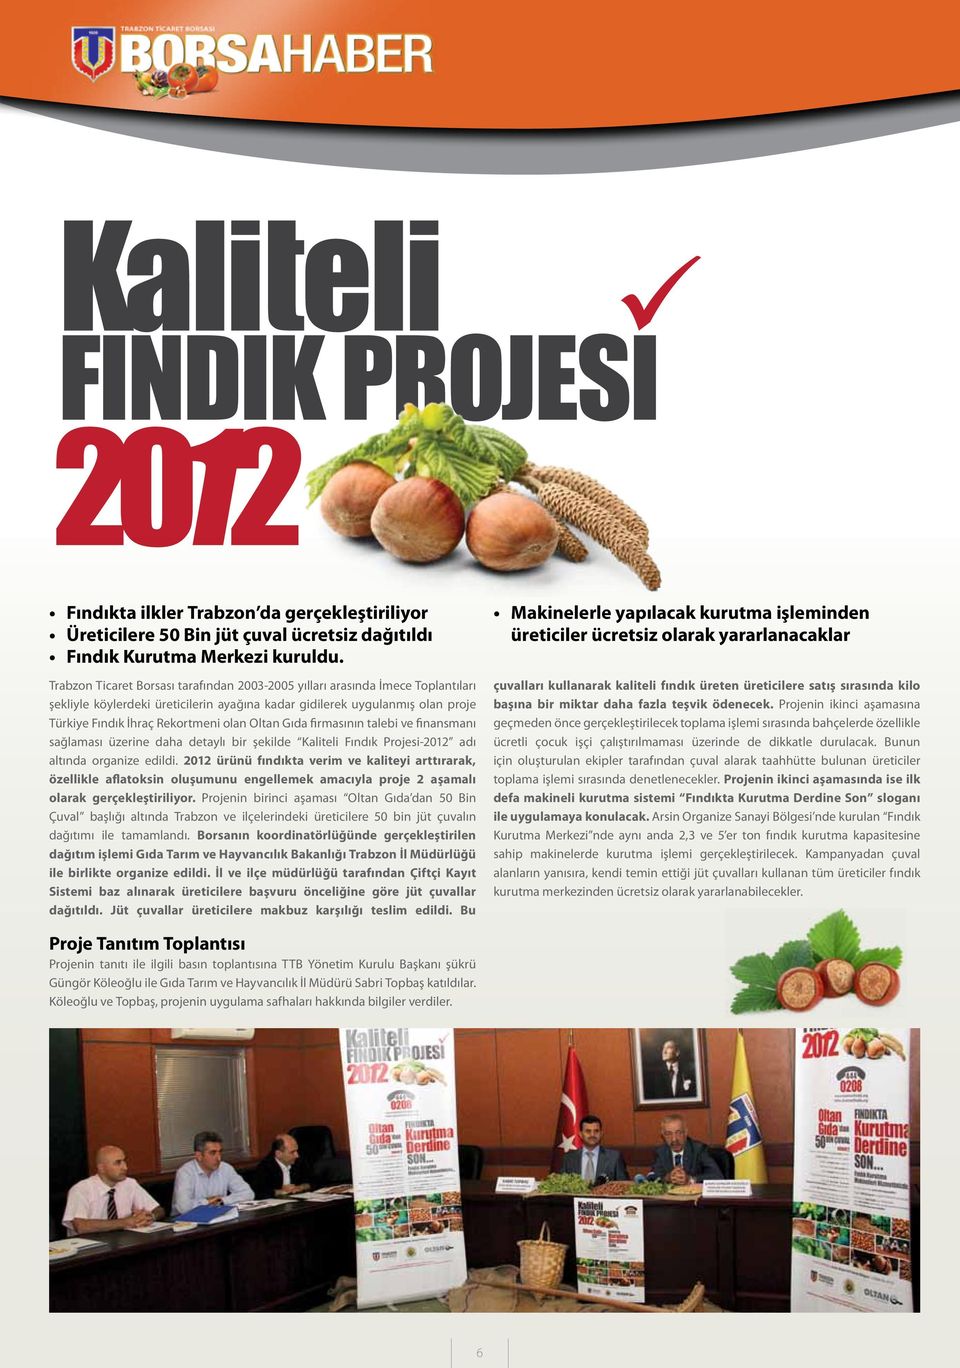 Oltan Gıda firmasının talebi ve finansmanı sağlaması üzerine daha detaylı bir şekilde Kaliteli Fındık Projesi-2012 adı altında organize edildi.